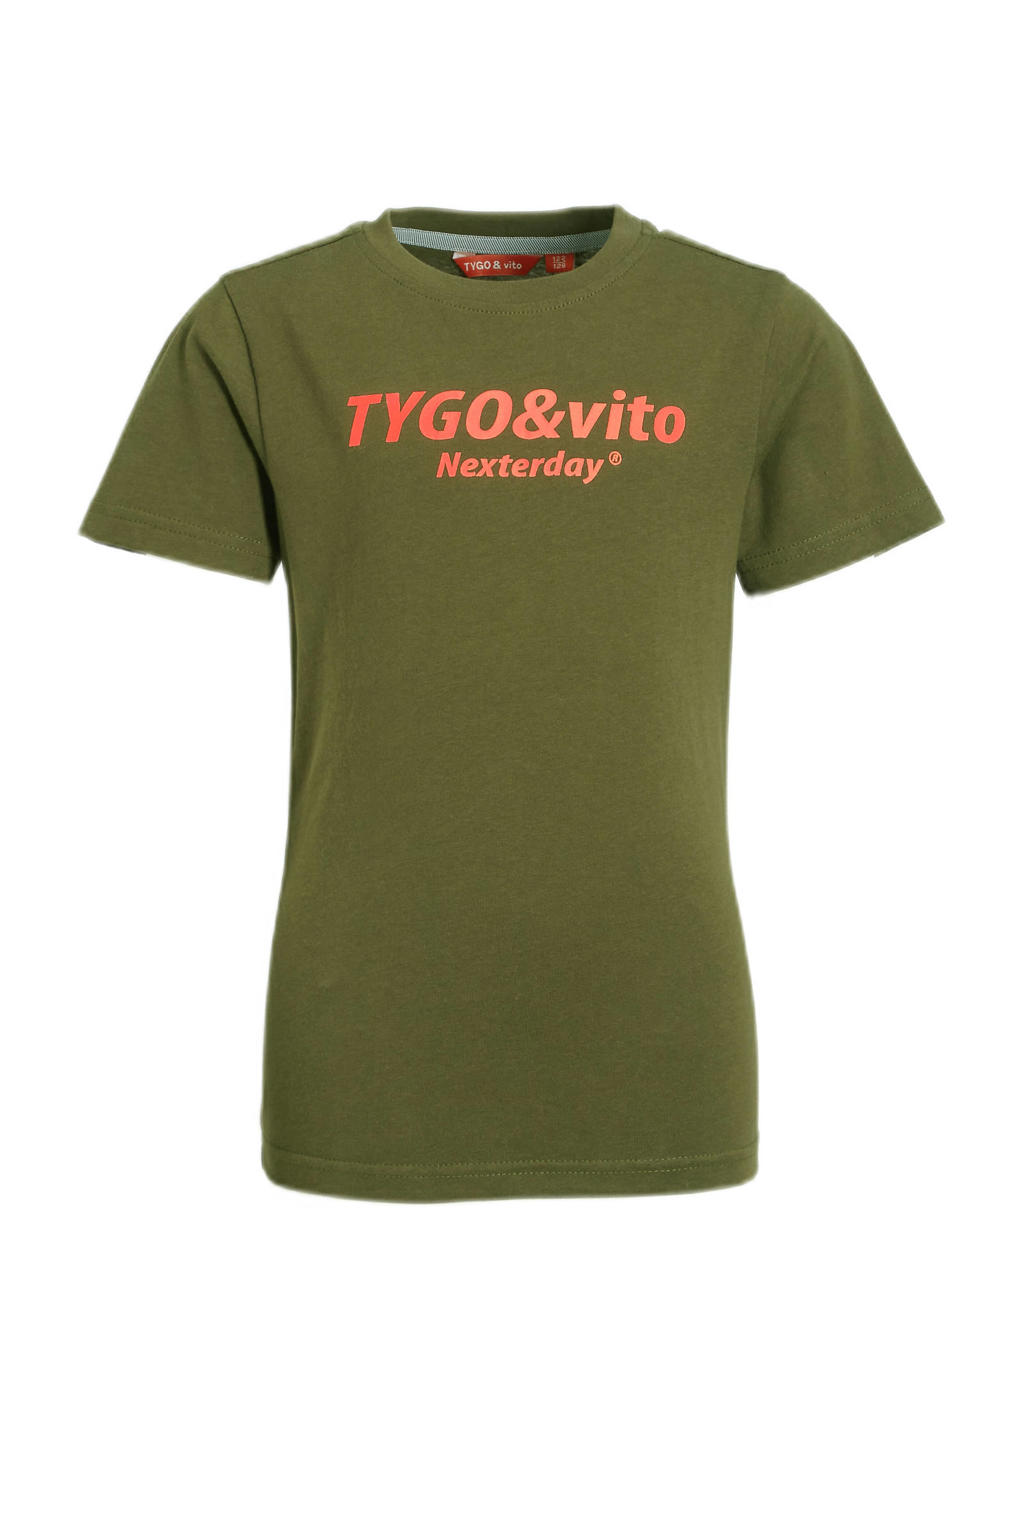 Groene jongens TYGO & vito T-shirt van duurzaam katoen met logo dessin, korte mouwen en ronde hals